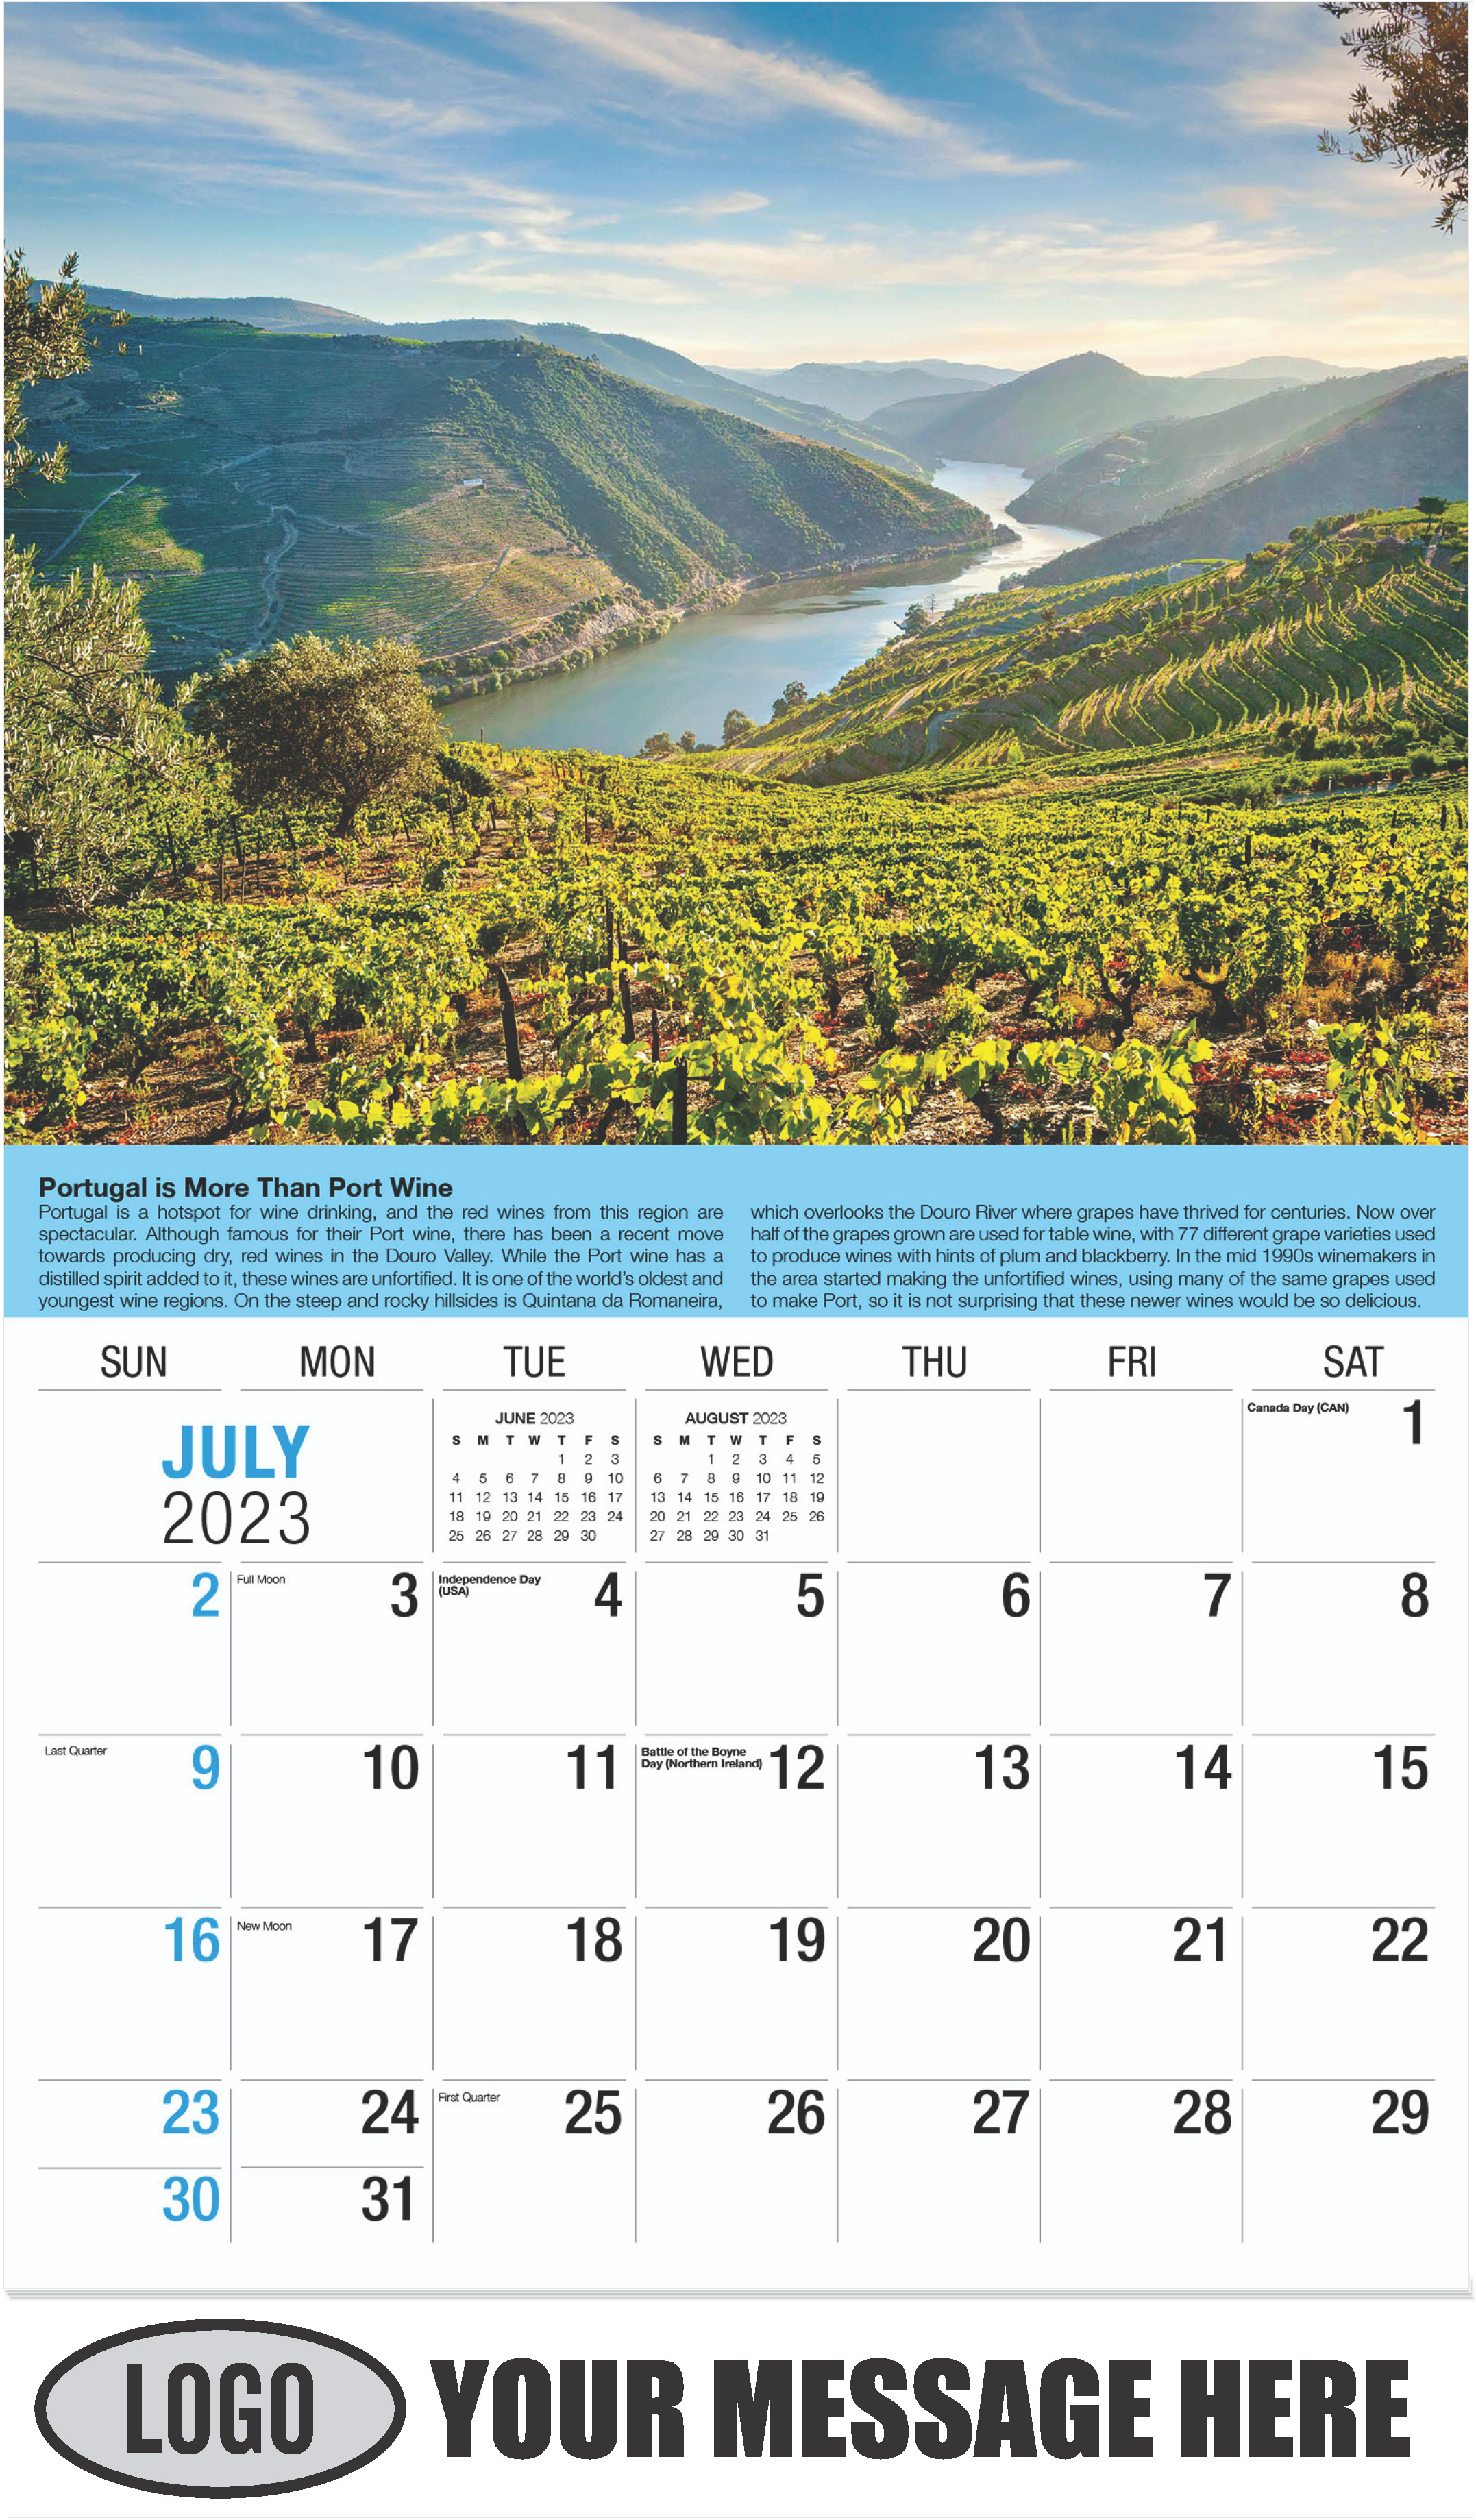 Wine Tips Calendar - July - Vintages 2023 Promotional Calendar